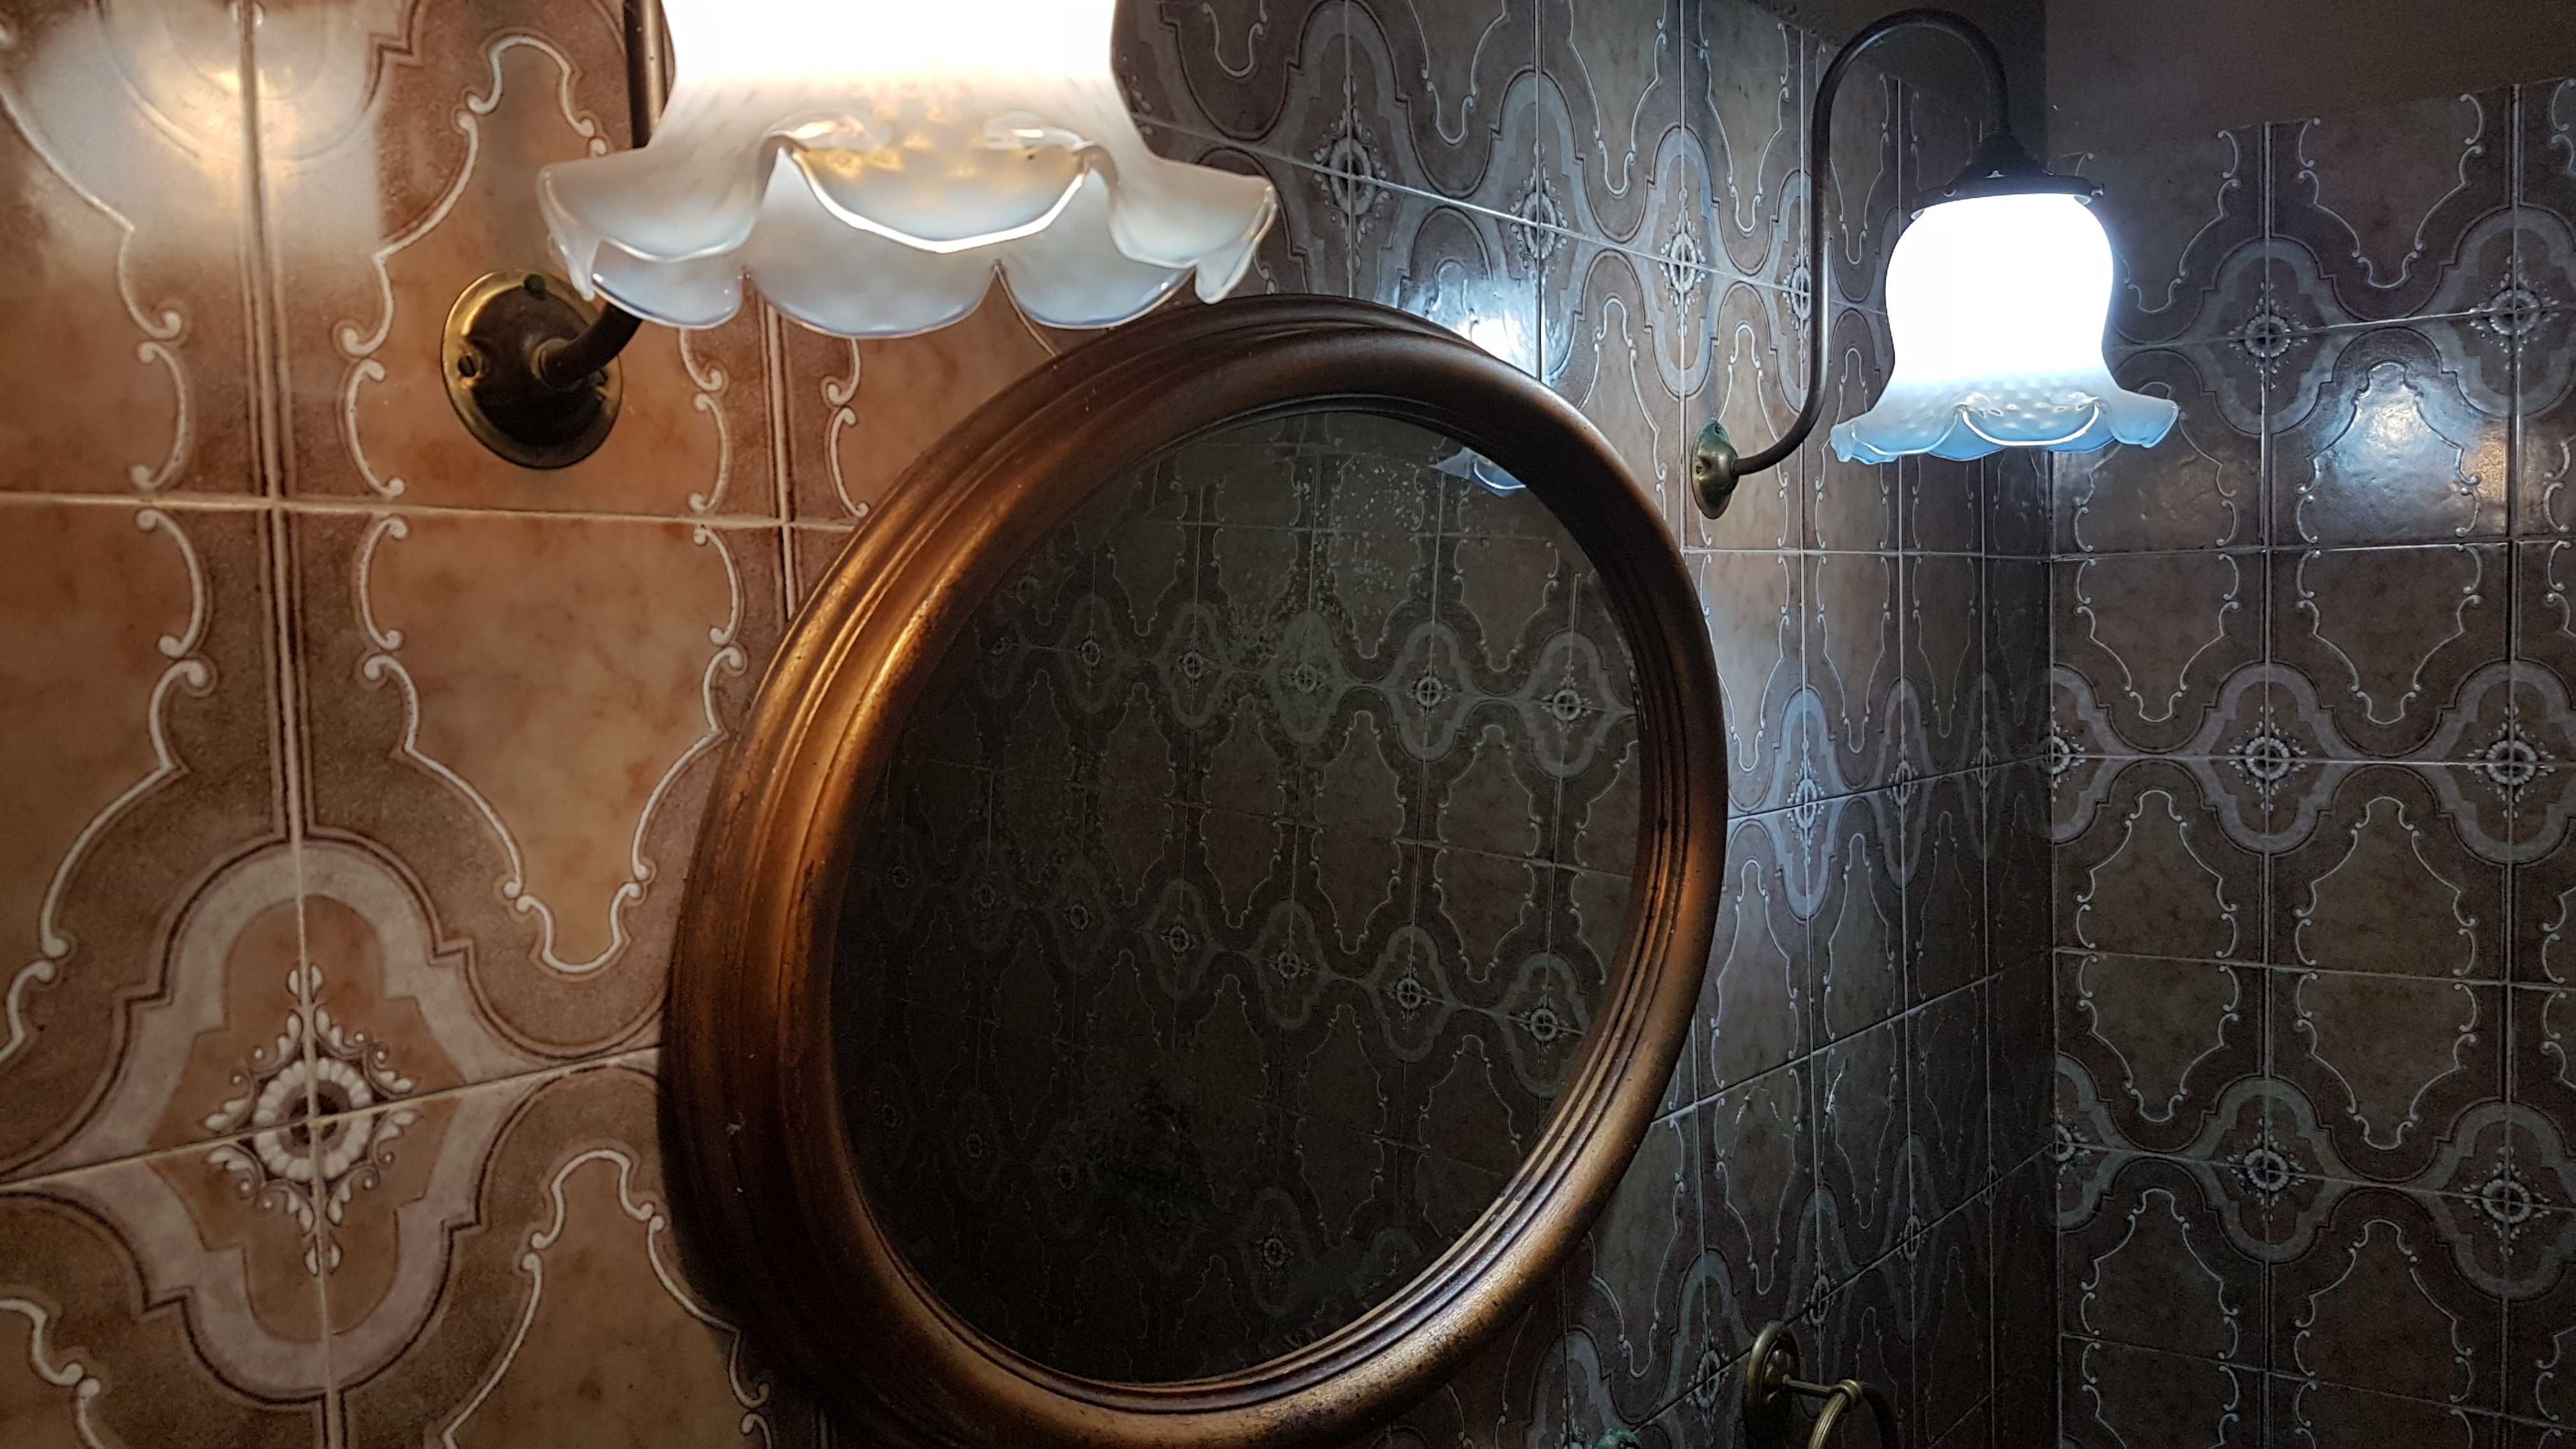 Espelho oval de WC